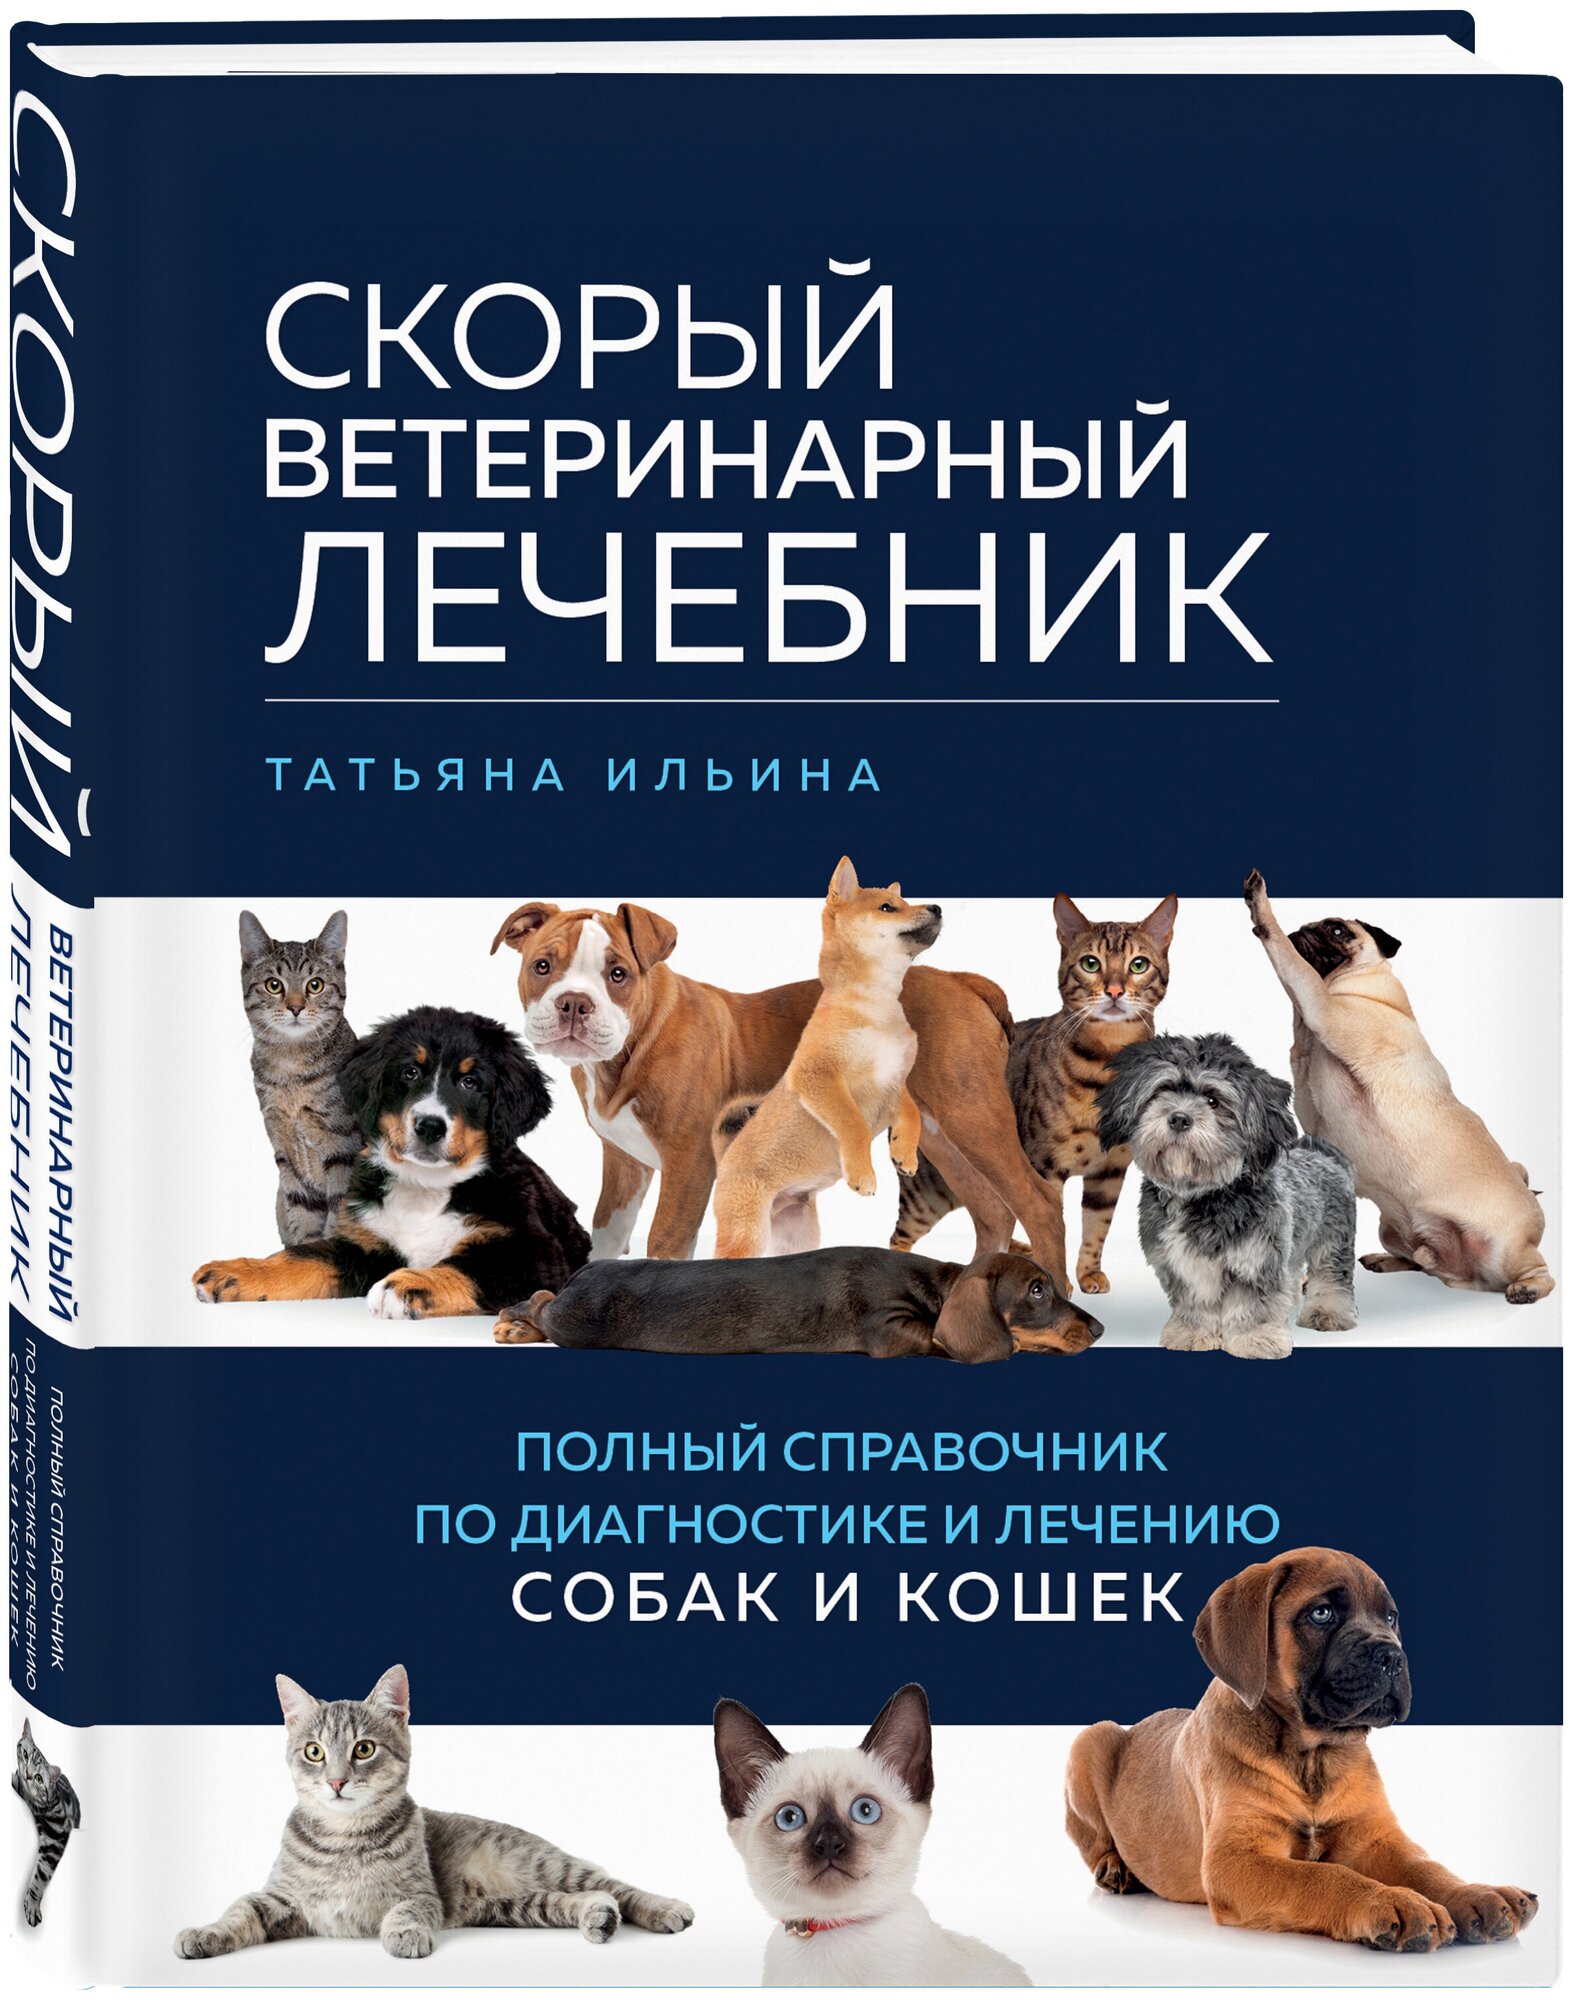 Ильина Т. А. Скорый ветеринарный лечебник. Полный справочник по диагностике и лечению собак и кошек